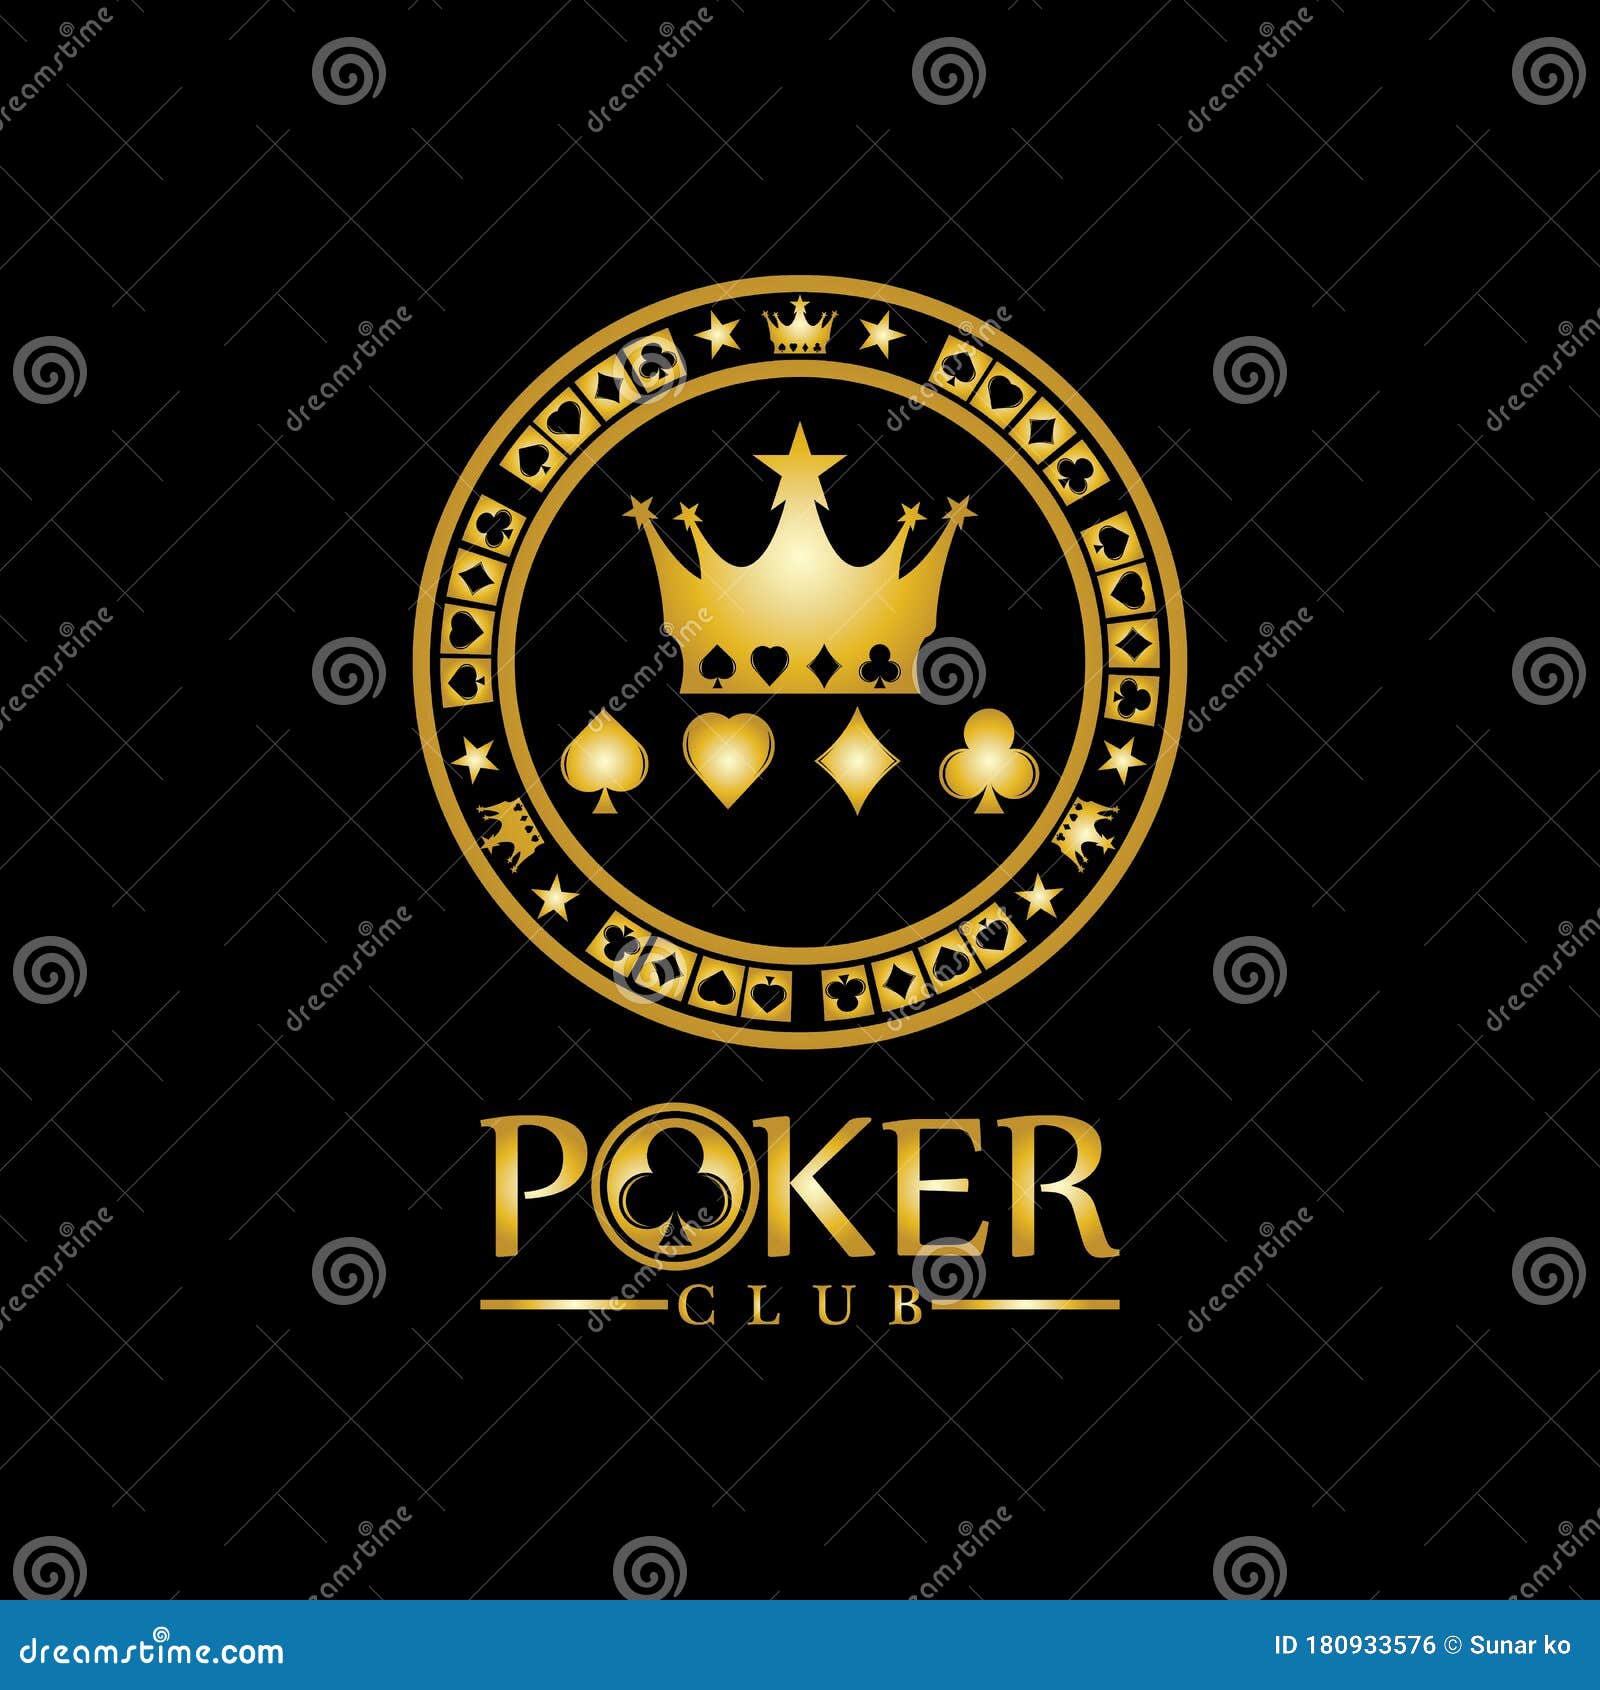 Thật sự đặc biệt và đáng chú ý, logo thiết kế Vector chơi bài Poker vua vàng trên nền đen - vua vàng đen này sẽ khiến bạn cảm thấy hài lòng và thỏa mãn ngay từ lần nhìn đầu tiên. Đừng bỏ qua cơ hội để thể hiện phong cách riêng của bạn với logo này!